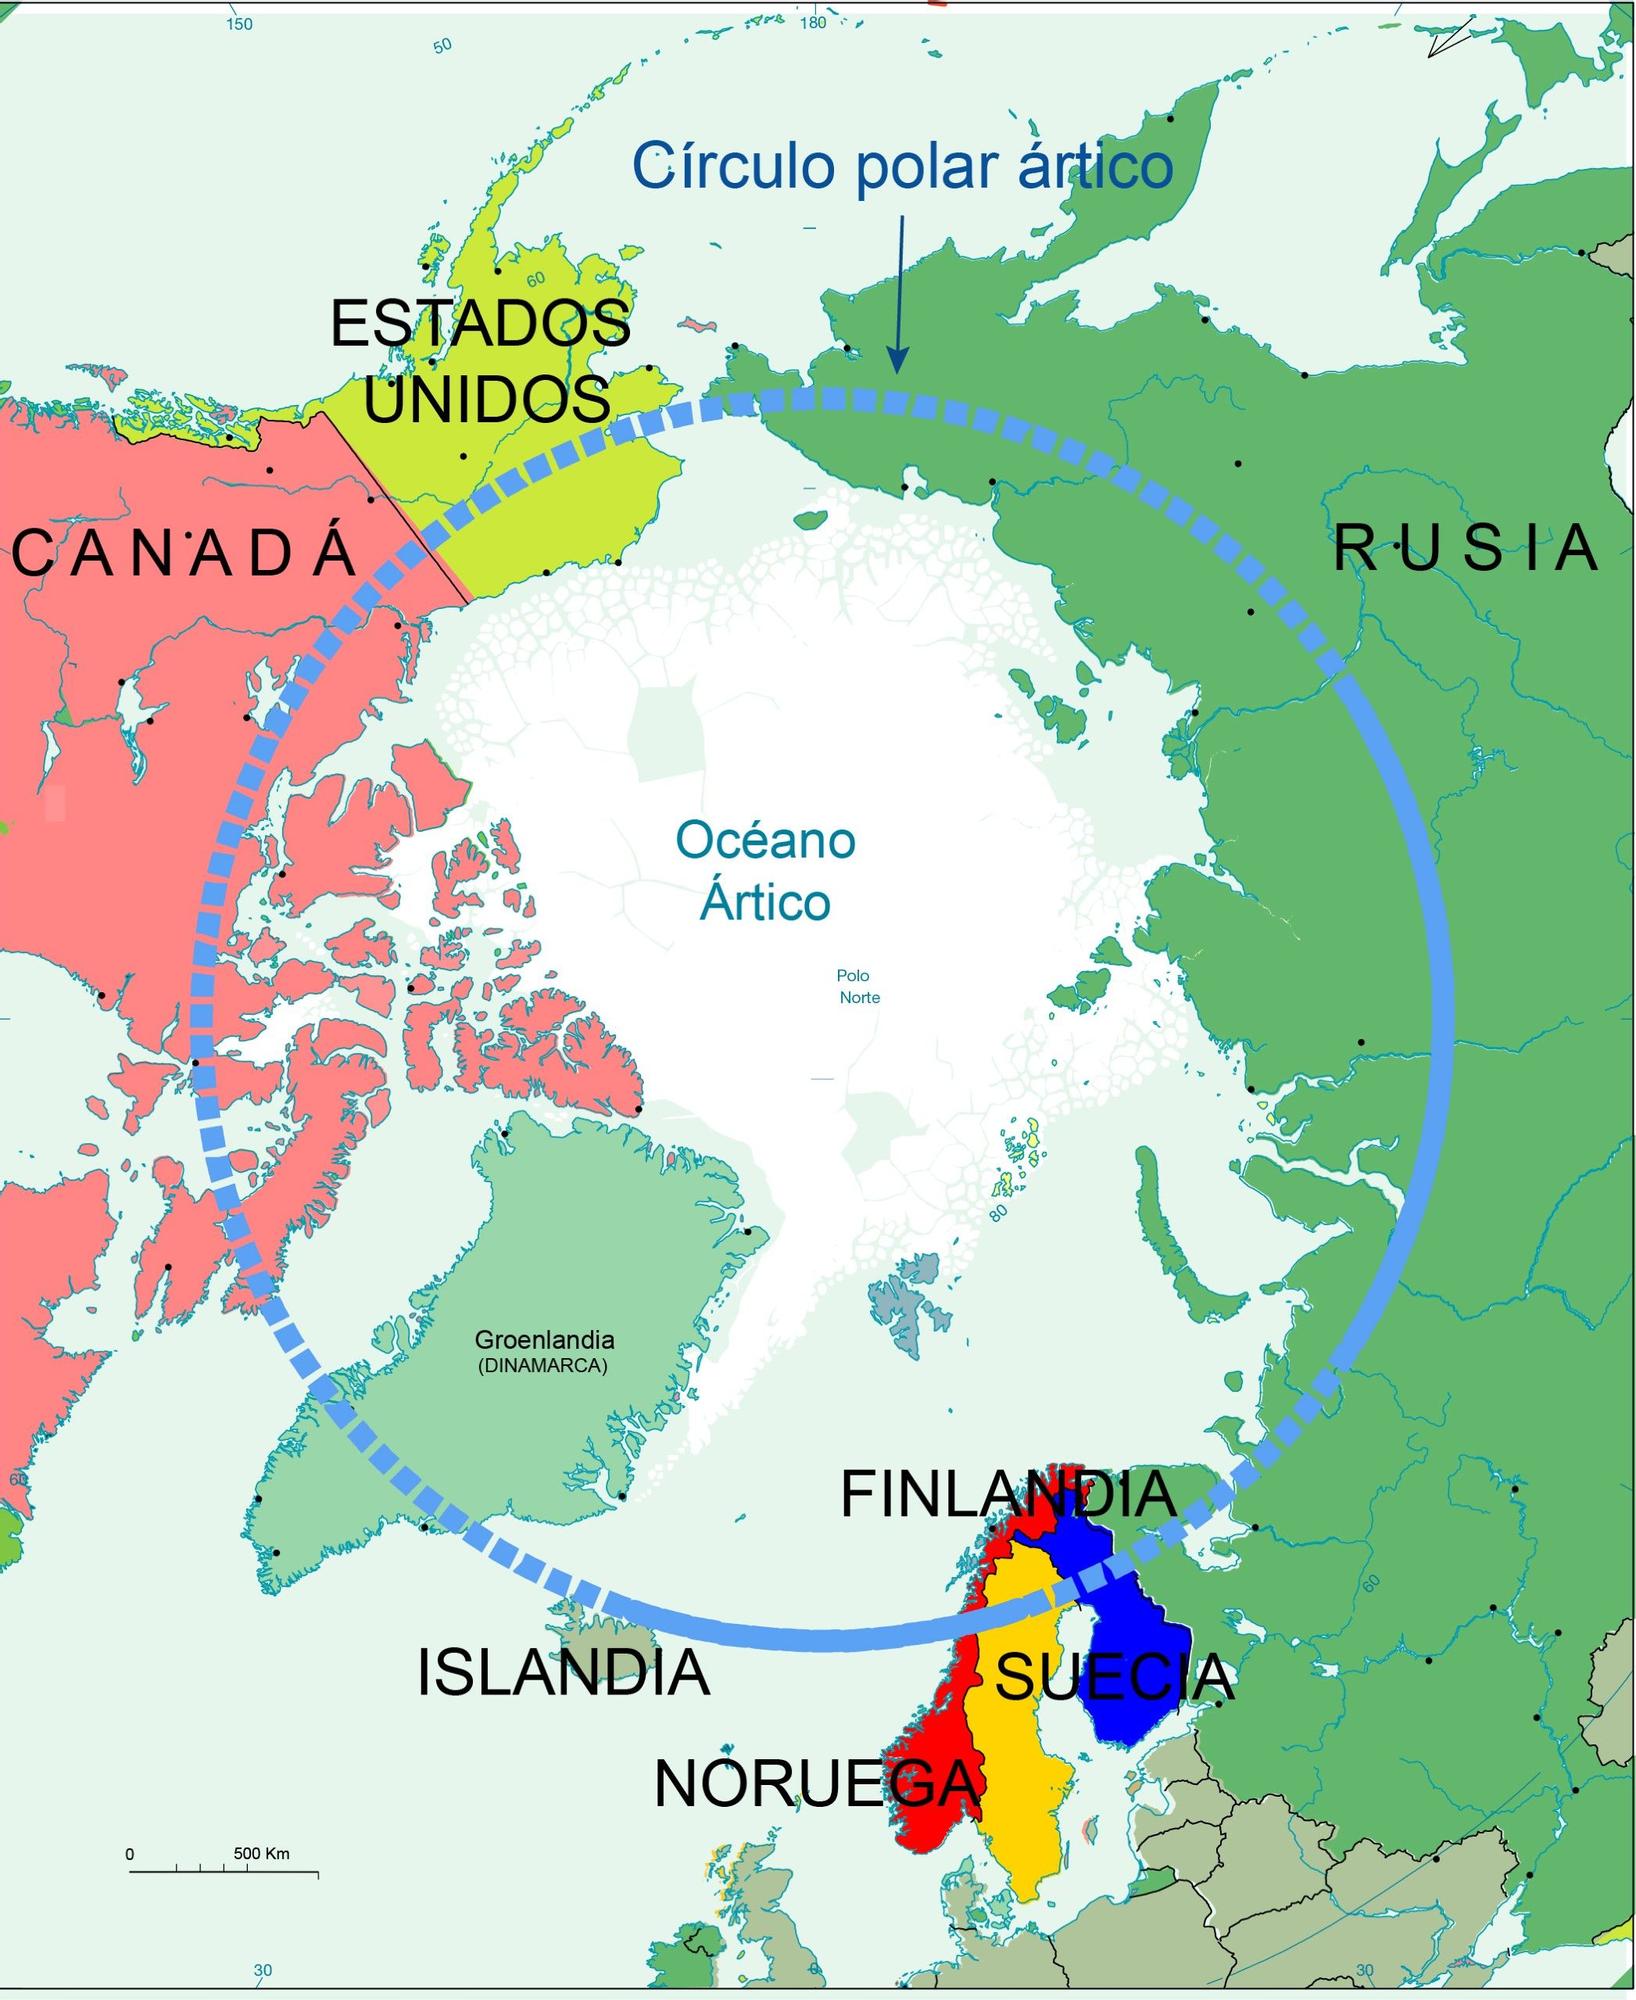 La OTAN alerta contra una escalada militar de Rusia en el Ártico